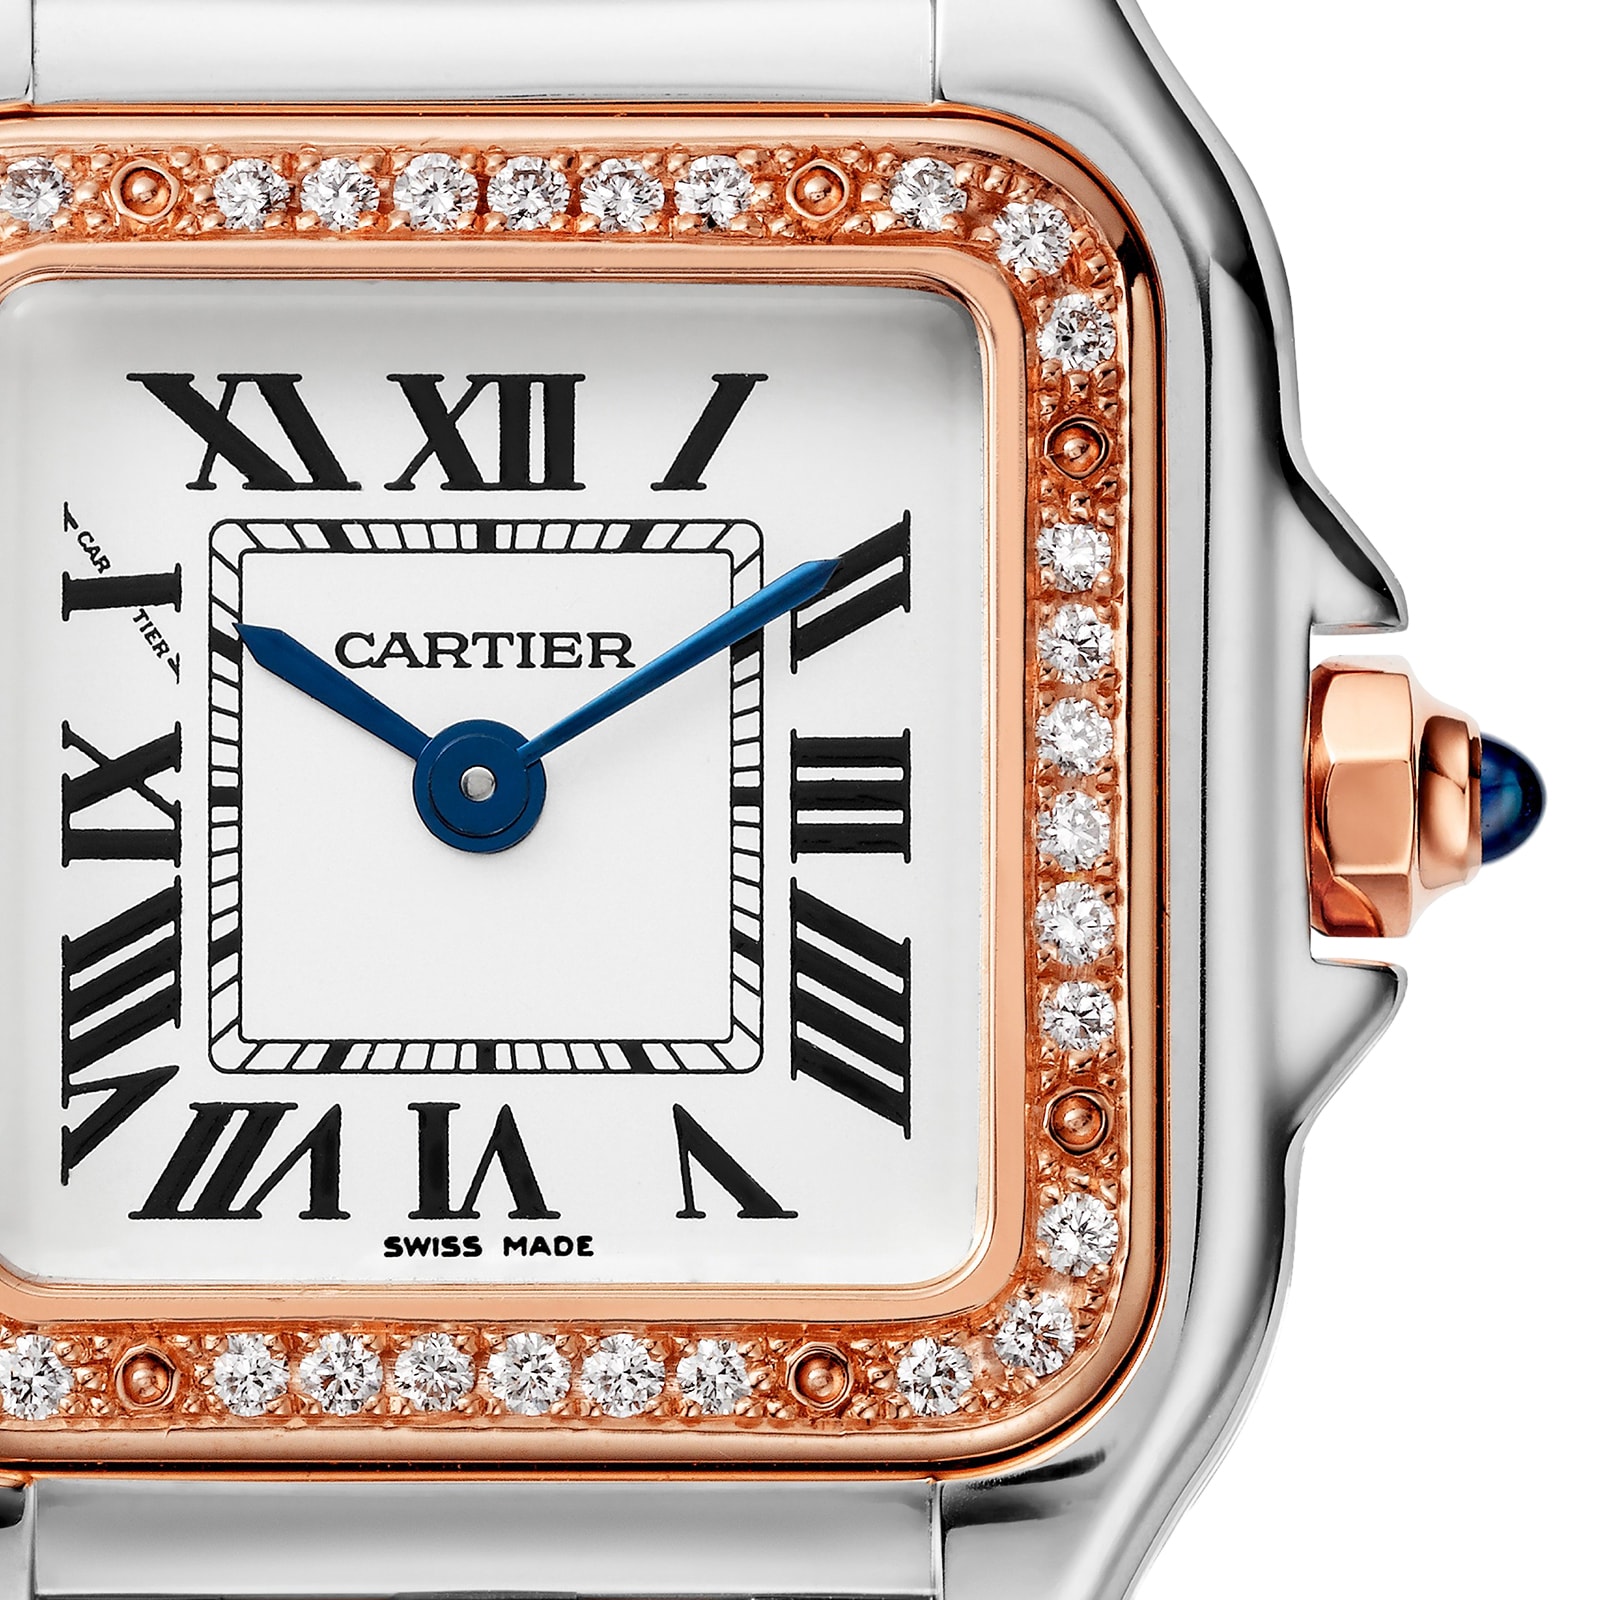 Panthère de Cartier: Luxury watches for women